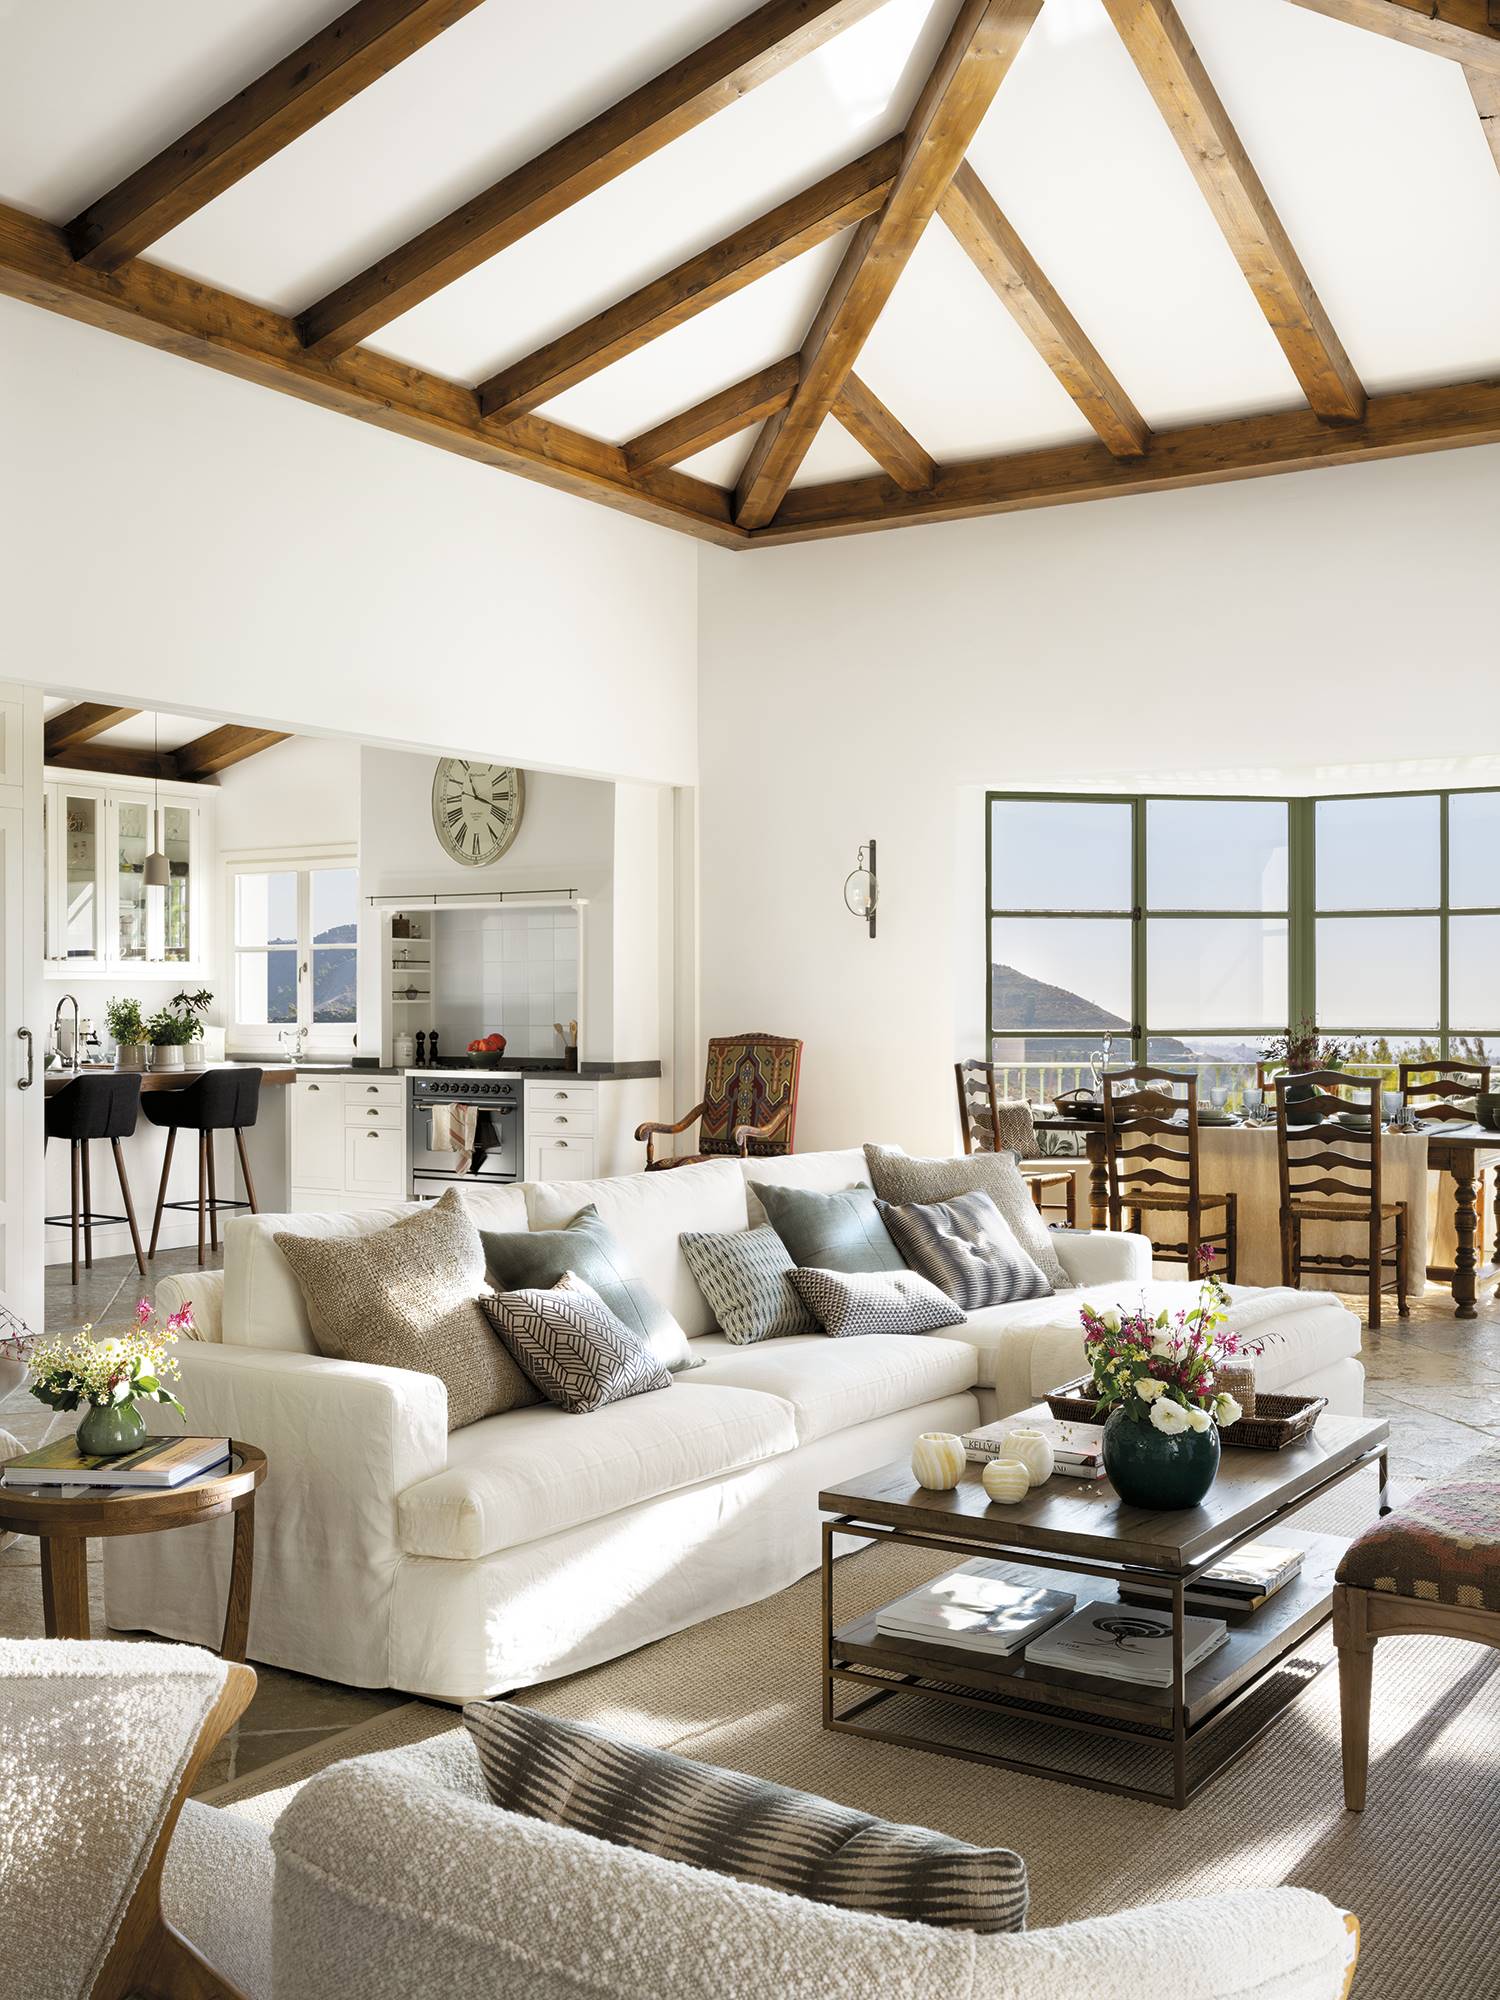 Salón con vigas de madera en el techo, sofá blanco, ventanal y mesa de centro de madera.